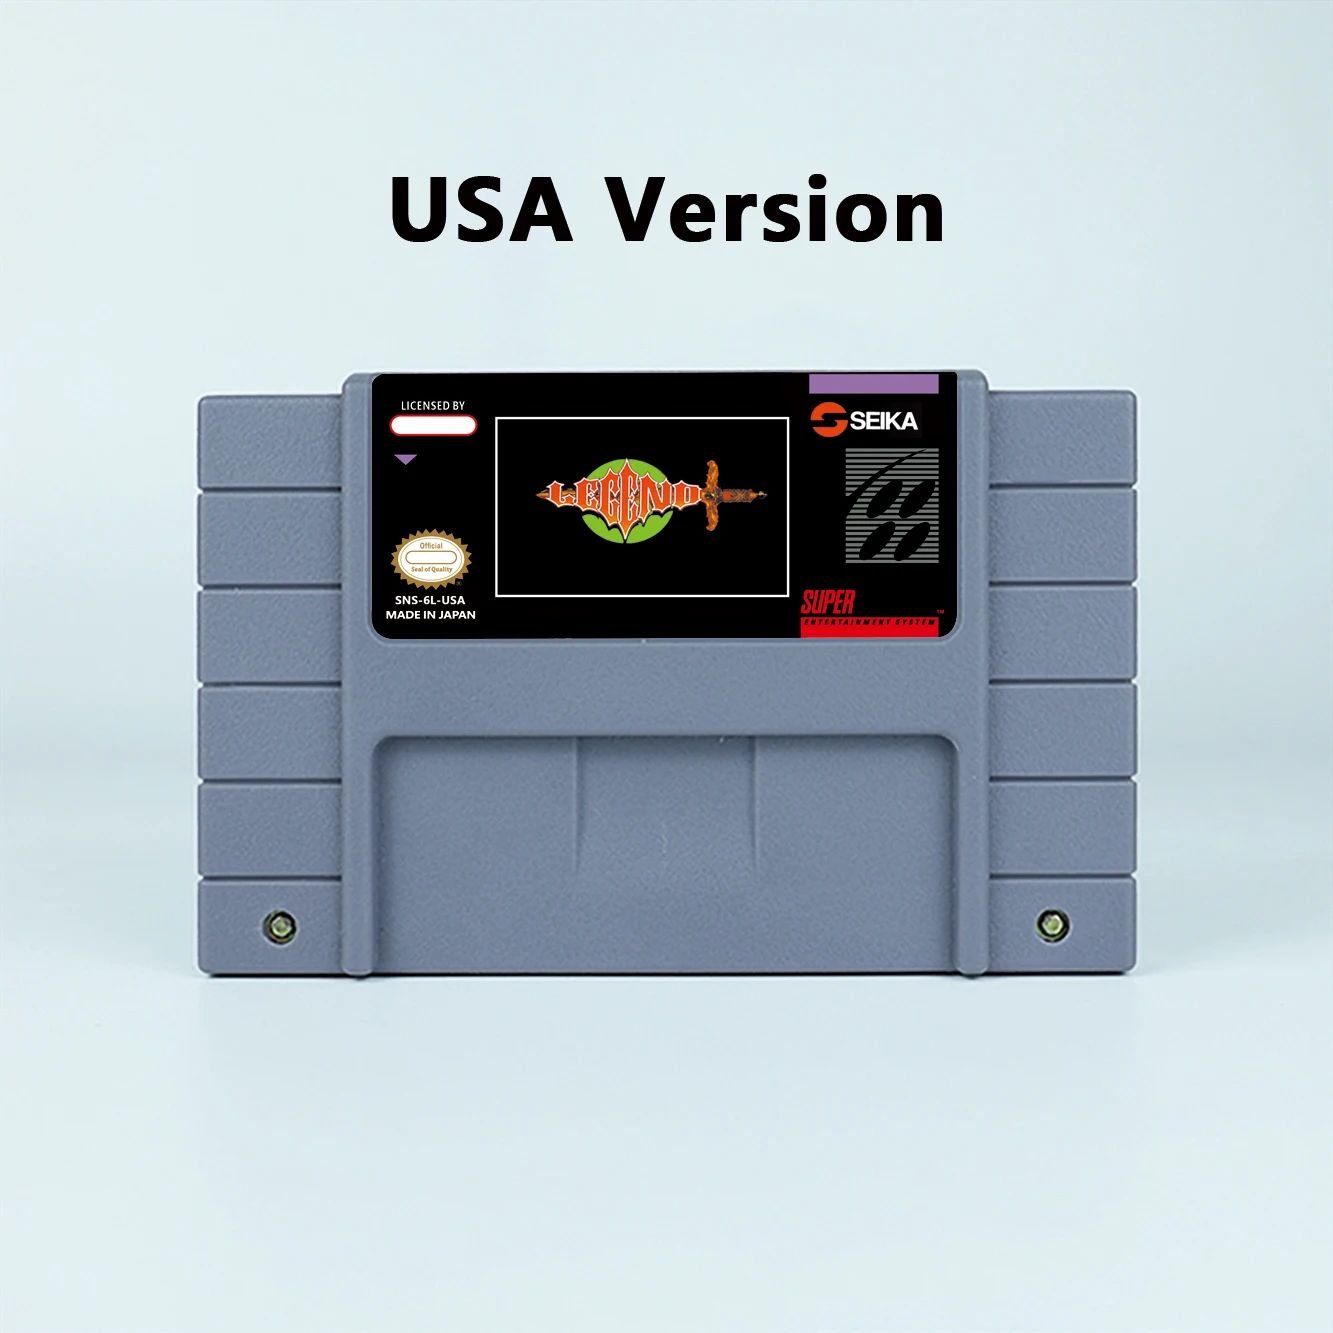 Color:USA NTSC game